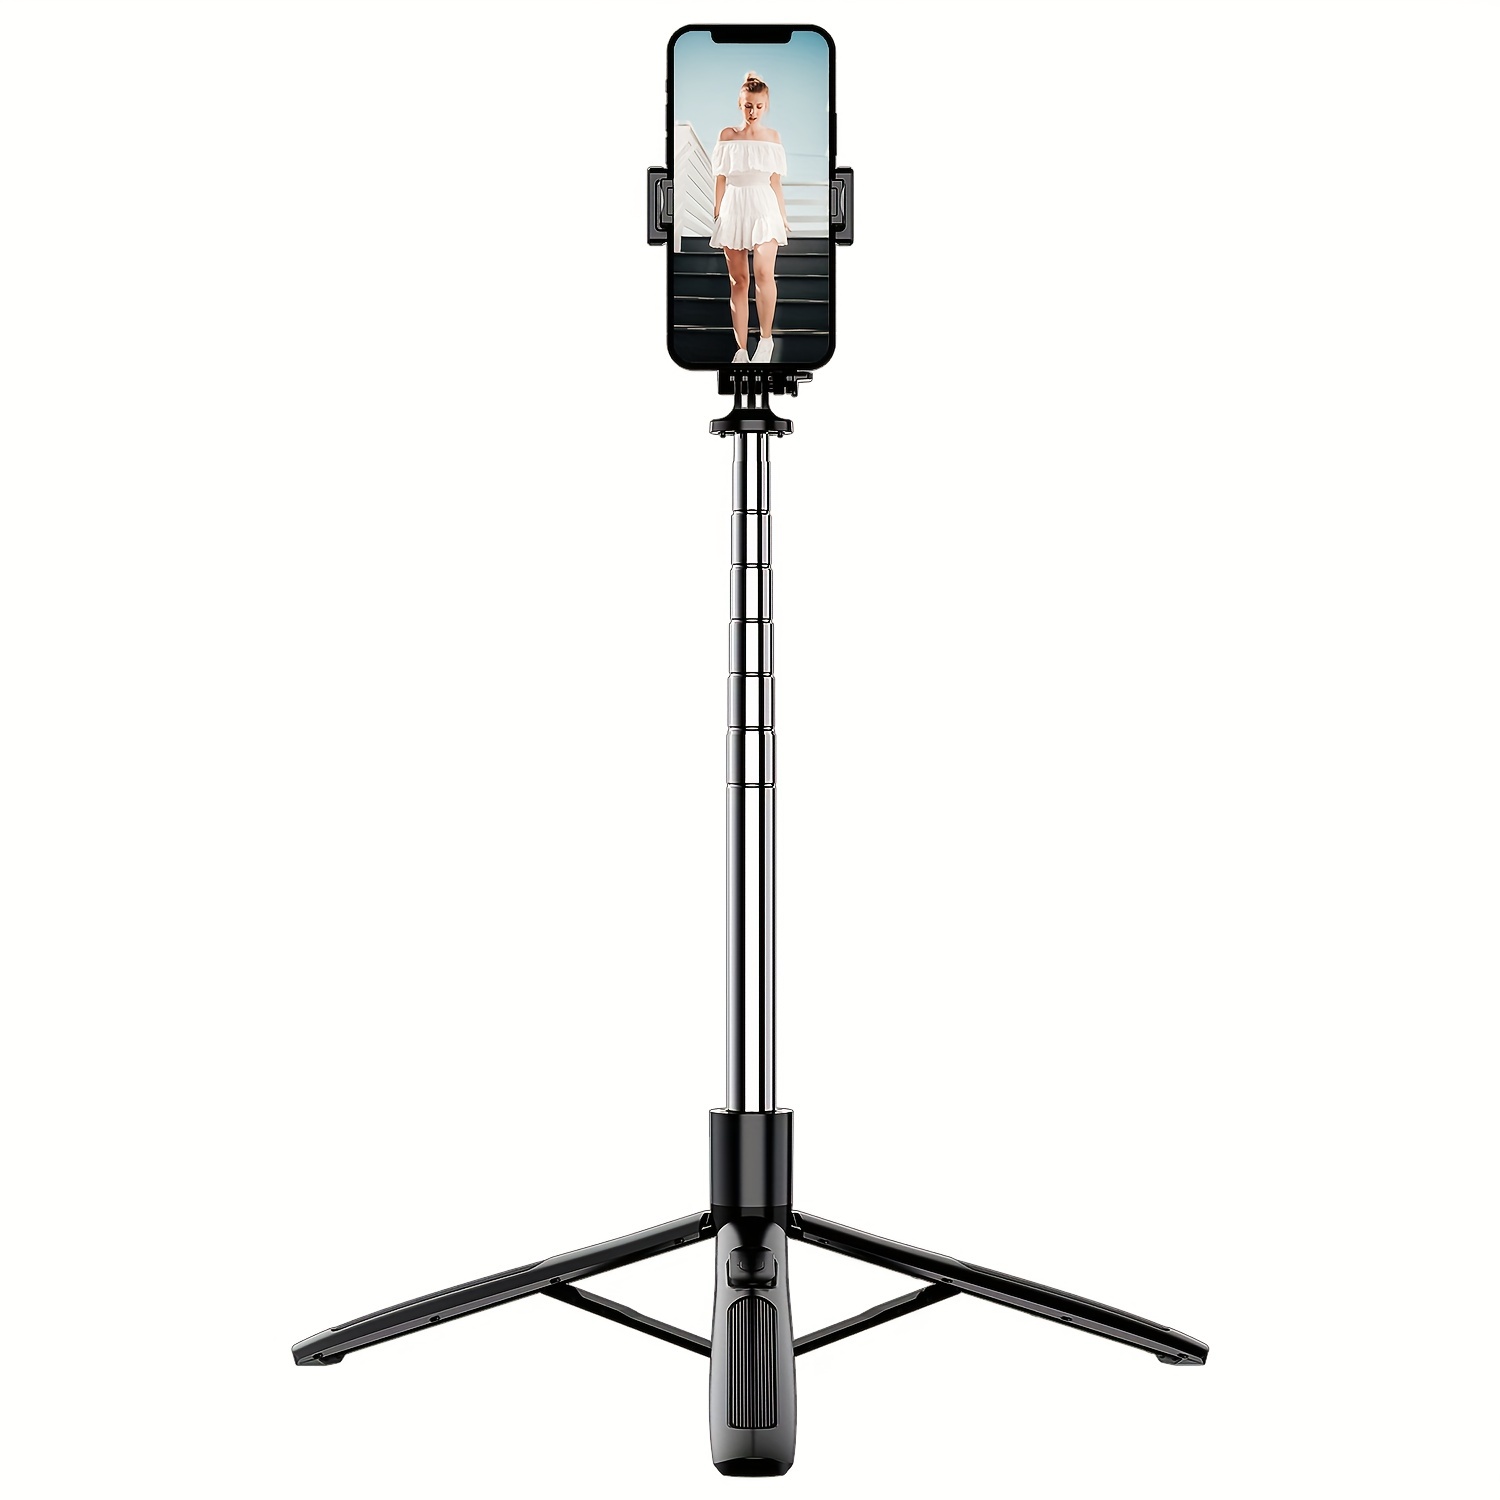  Trípode para selfie stick de 61 pulgadas, todo en uno,  extensible con control remoto inalámbrico, rotación de 360° para iPhone y  Android, grabación de video, vlogging, transmisión en vivo, aluminio 